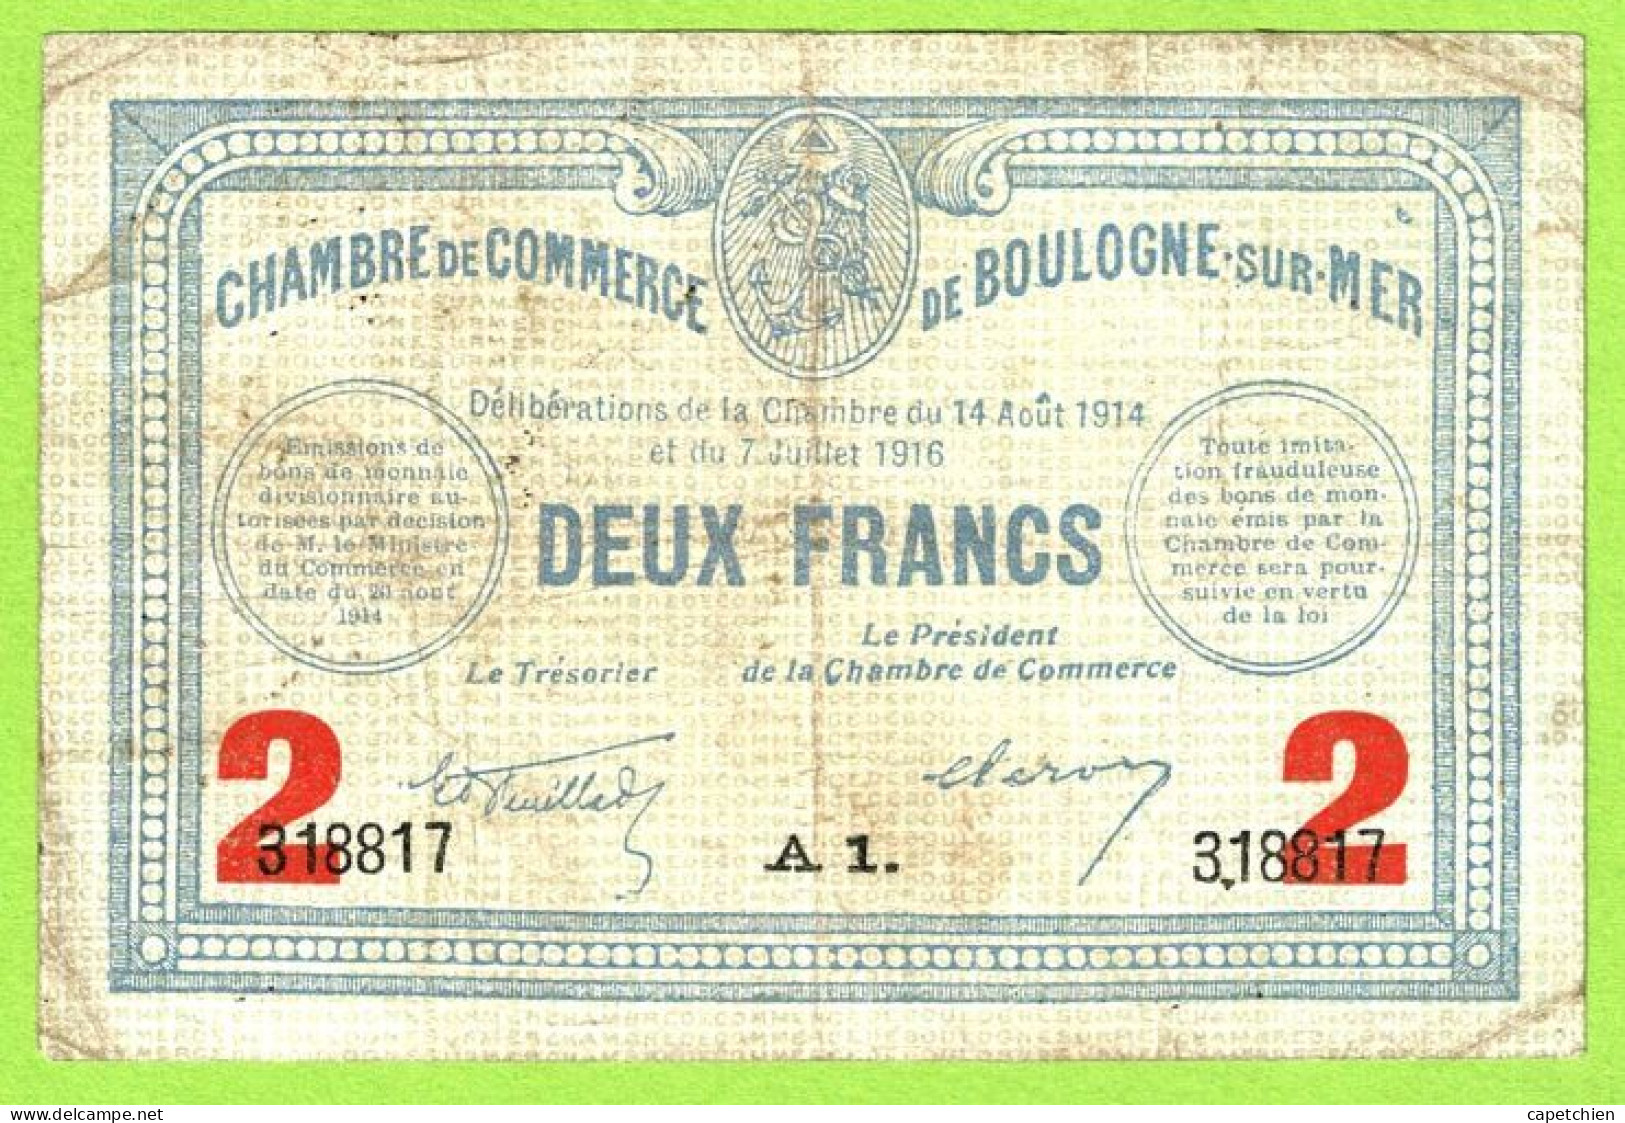 FRANCE / CHAMBRE de COMMERCE : BOULOGNE SUR MER / 2 FRANCS / 14 AOUT 1914 - 7 JUILLET 1916  / N° 318817 / SERIE A1